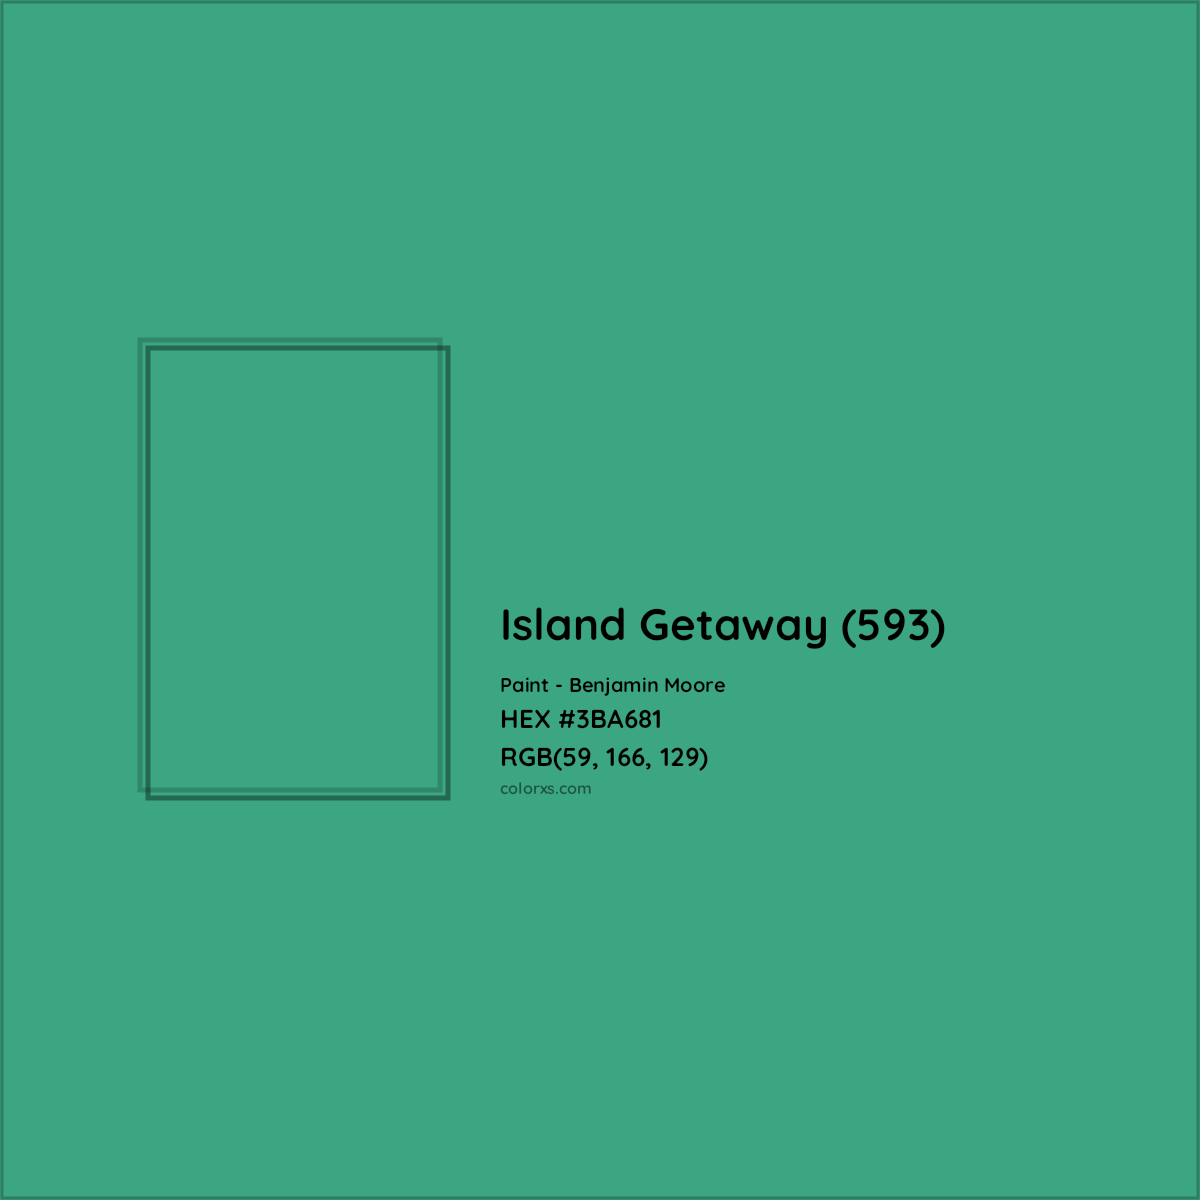 HEX #3BA681 Island Getaway (593) Paint Benjamin Moore - Color Code